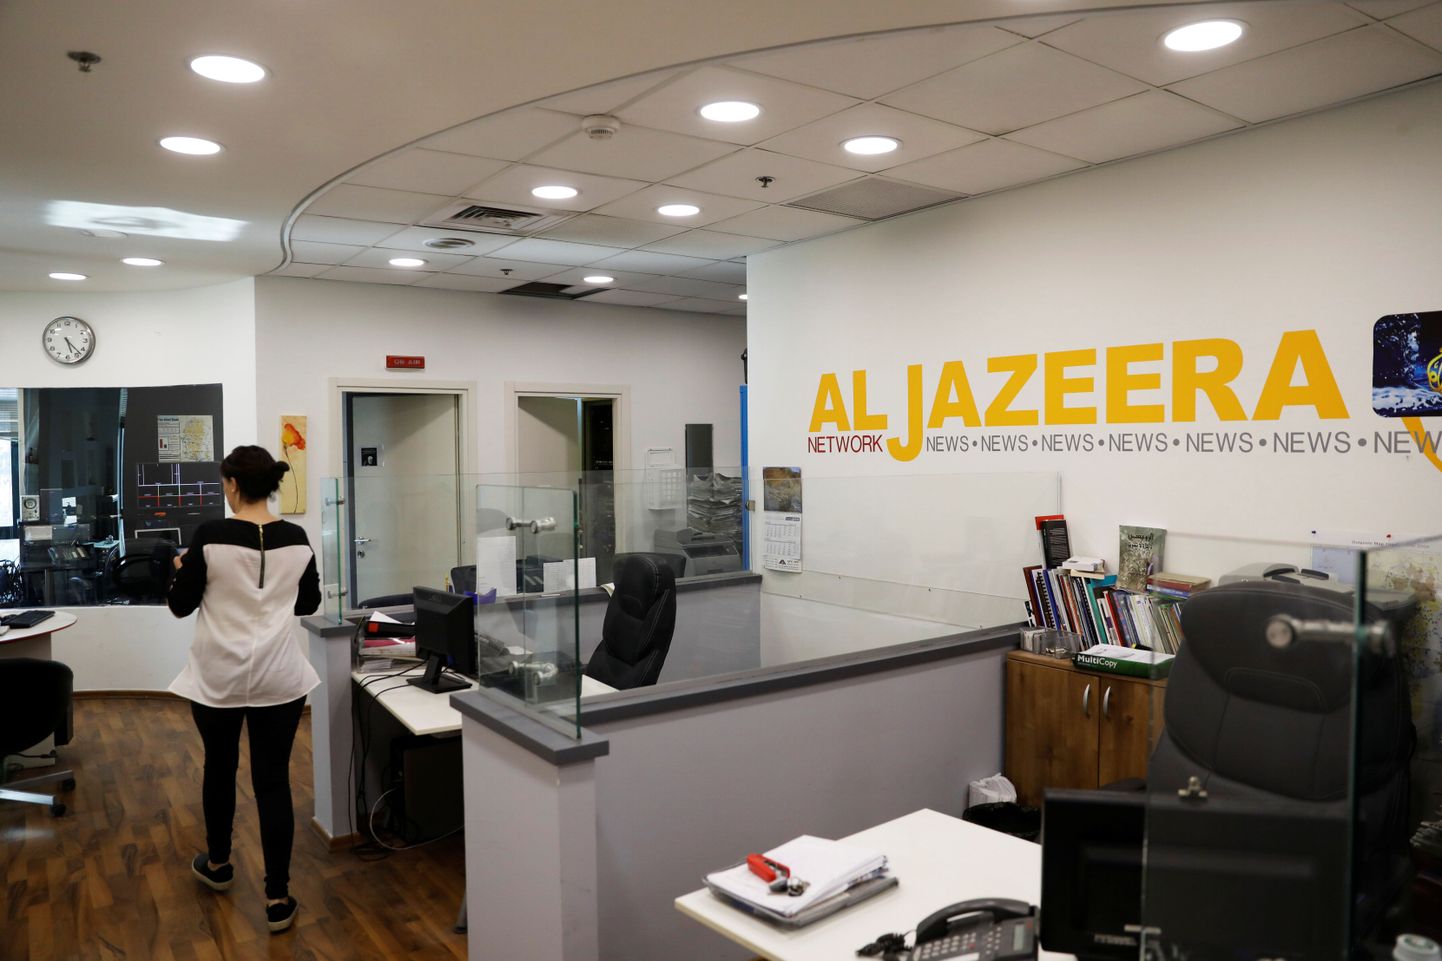 Uudisteagentuuri Al Jazeera kontor Jeruusalemmas.